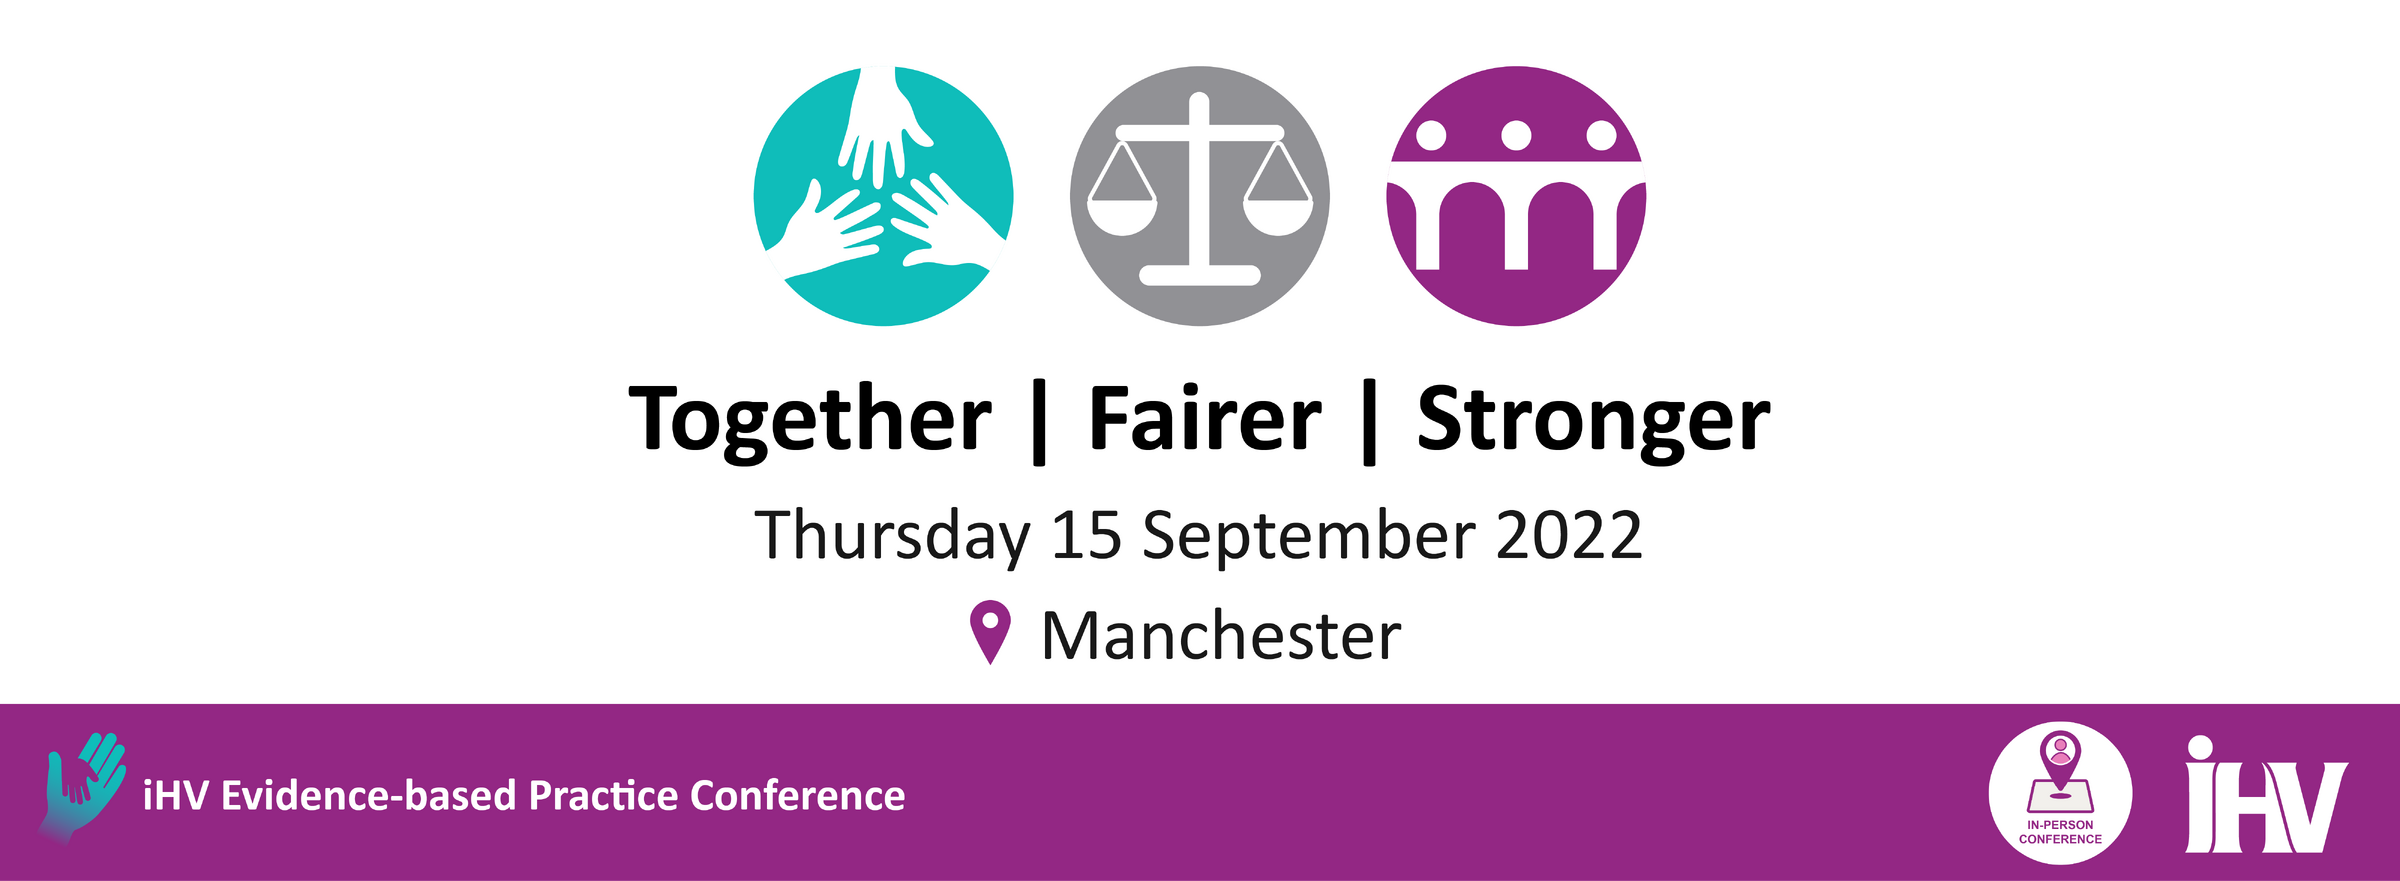 iHV Evidence-based Practice Conference: Together | Fairer | Stronger